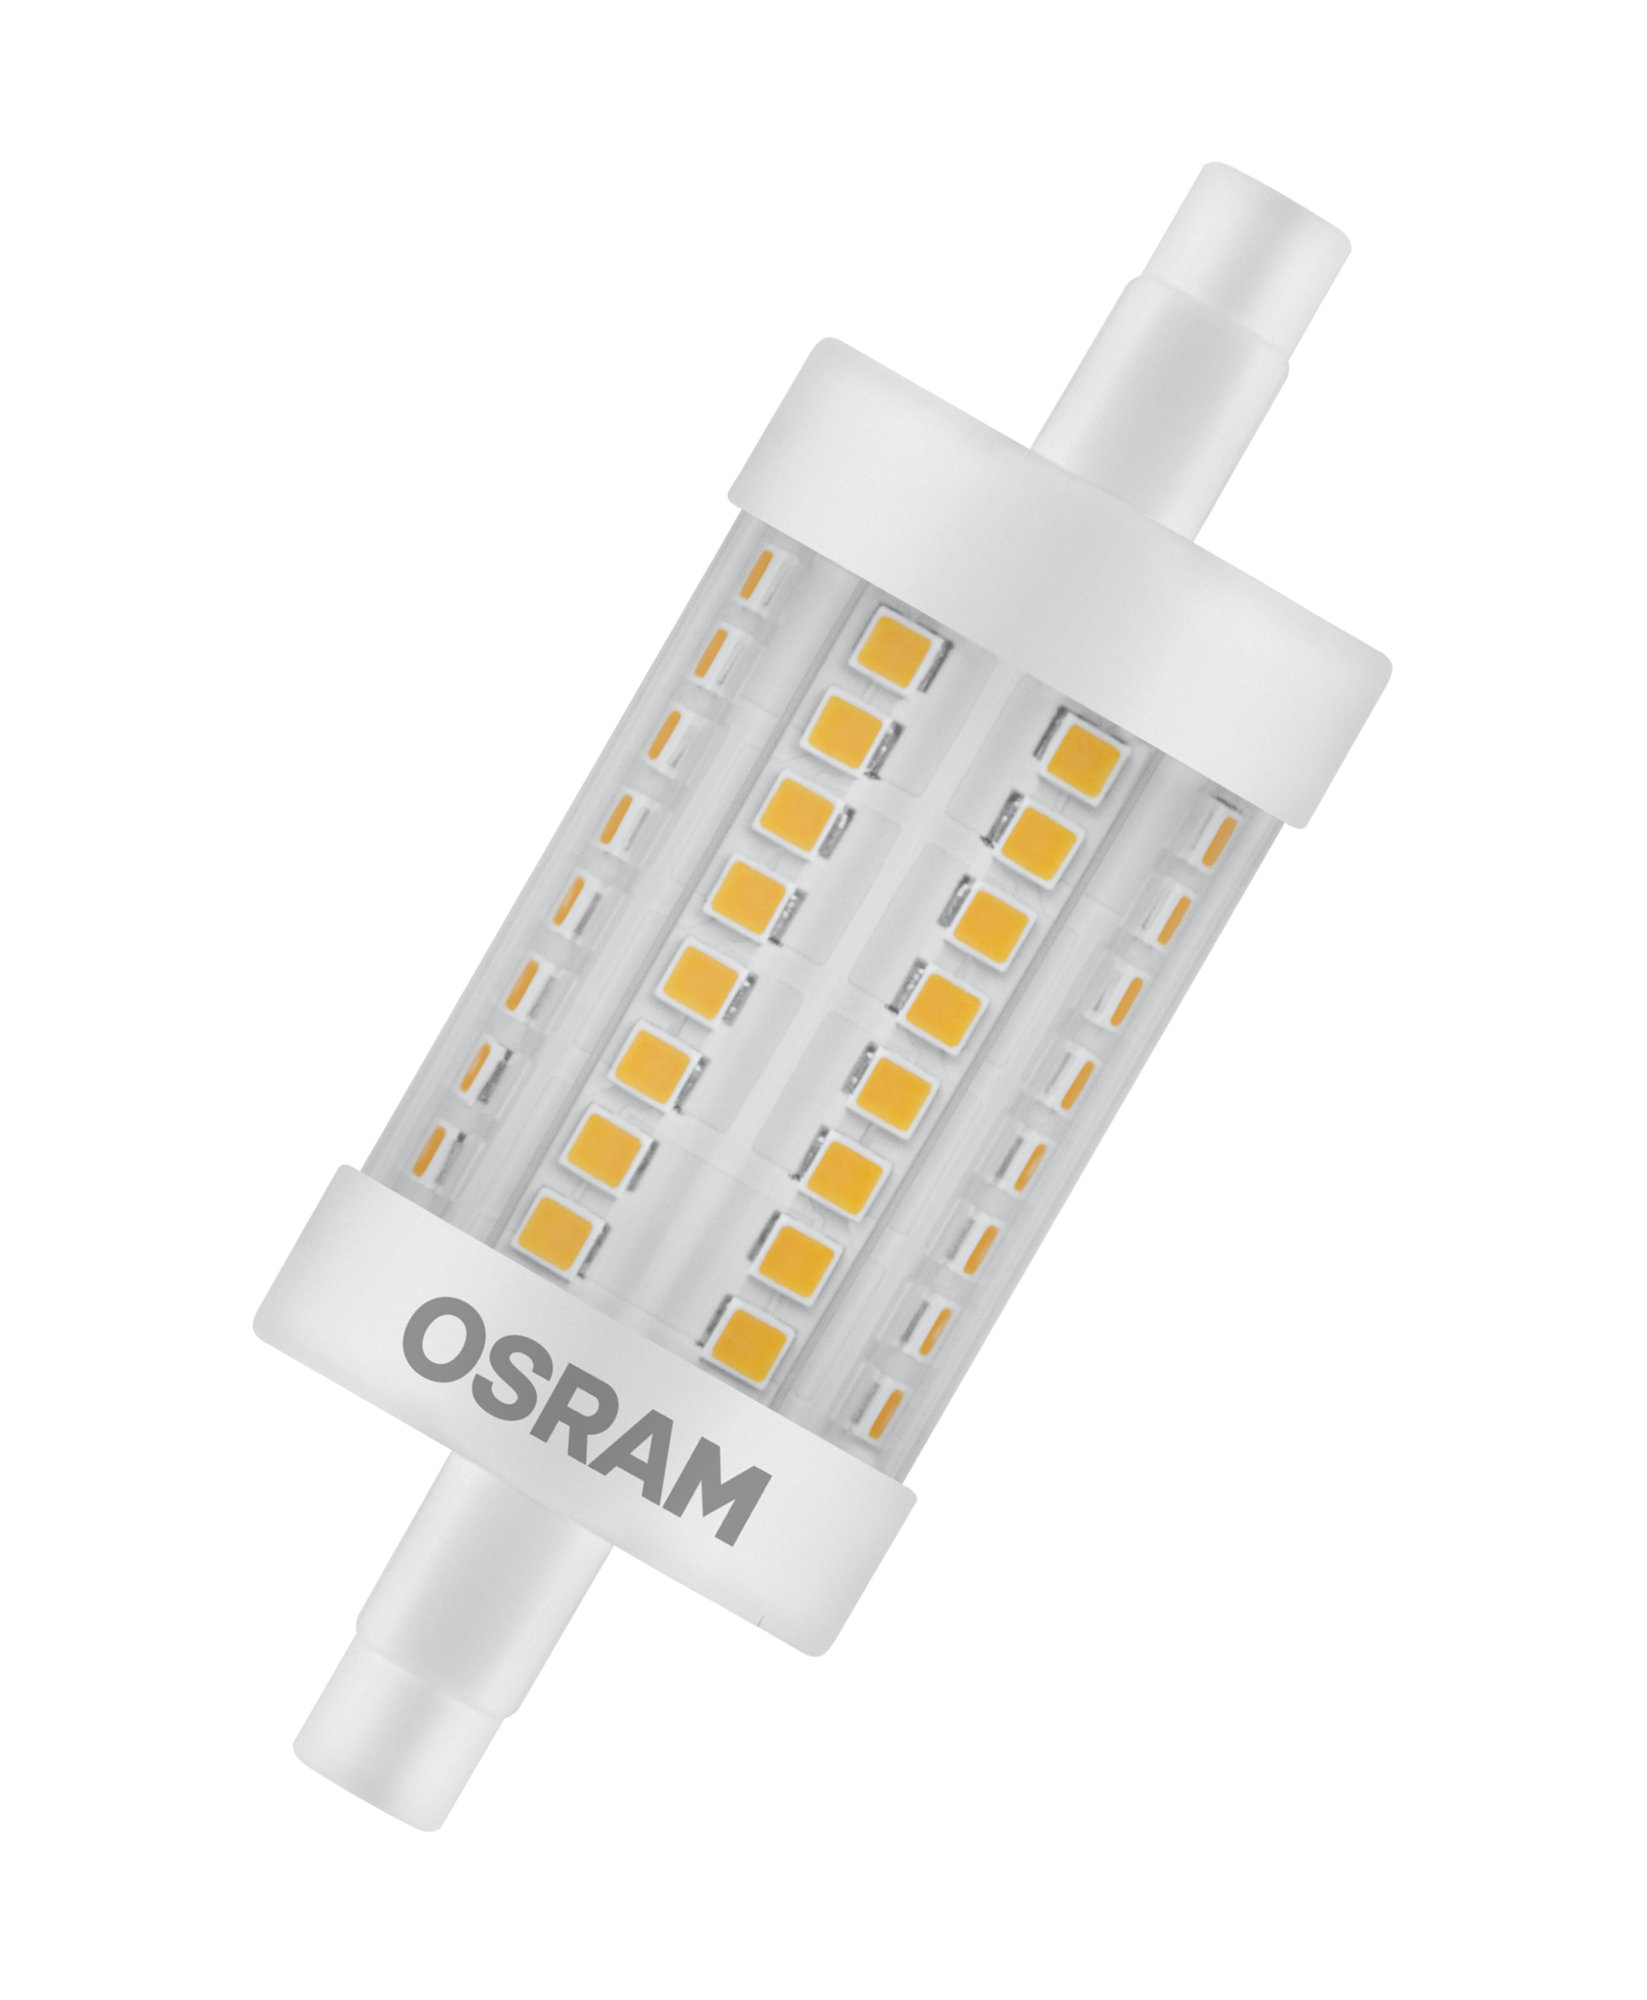 Bec Osram LED SST DIM LINE 78 HS 75 8W 827 R7S 78mm 1055lm 2700K